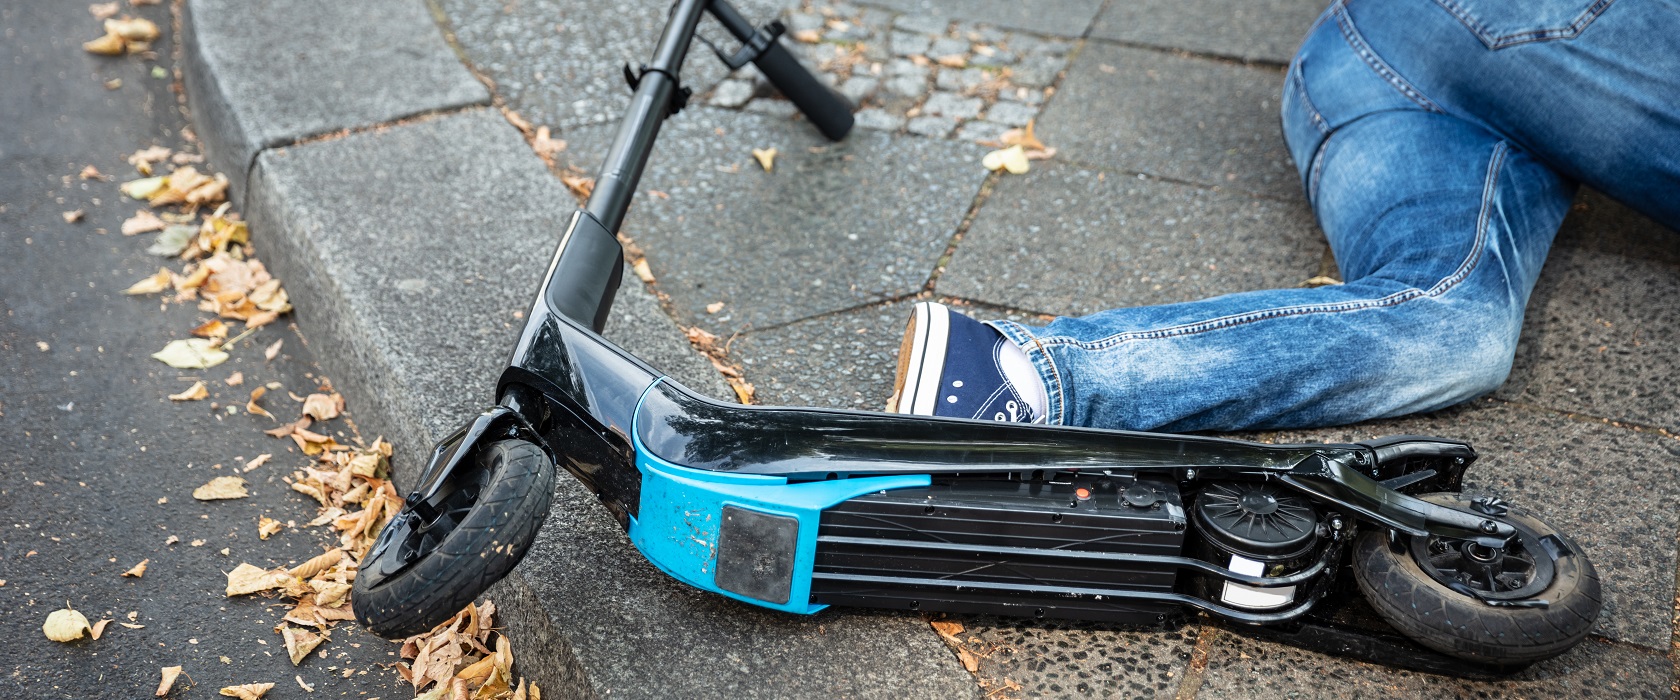 Bild Unfall mit eScooter